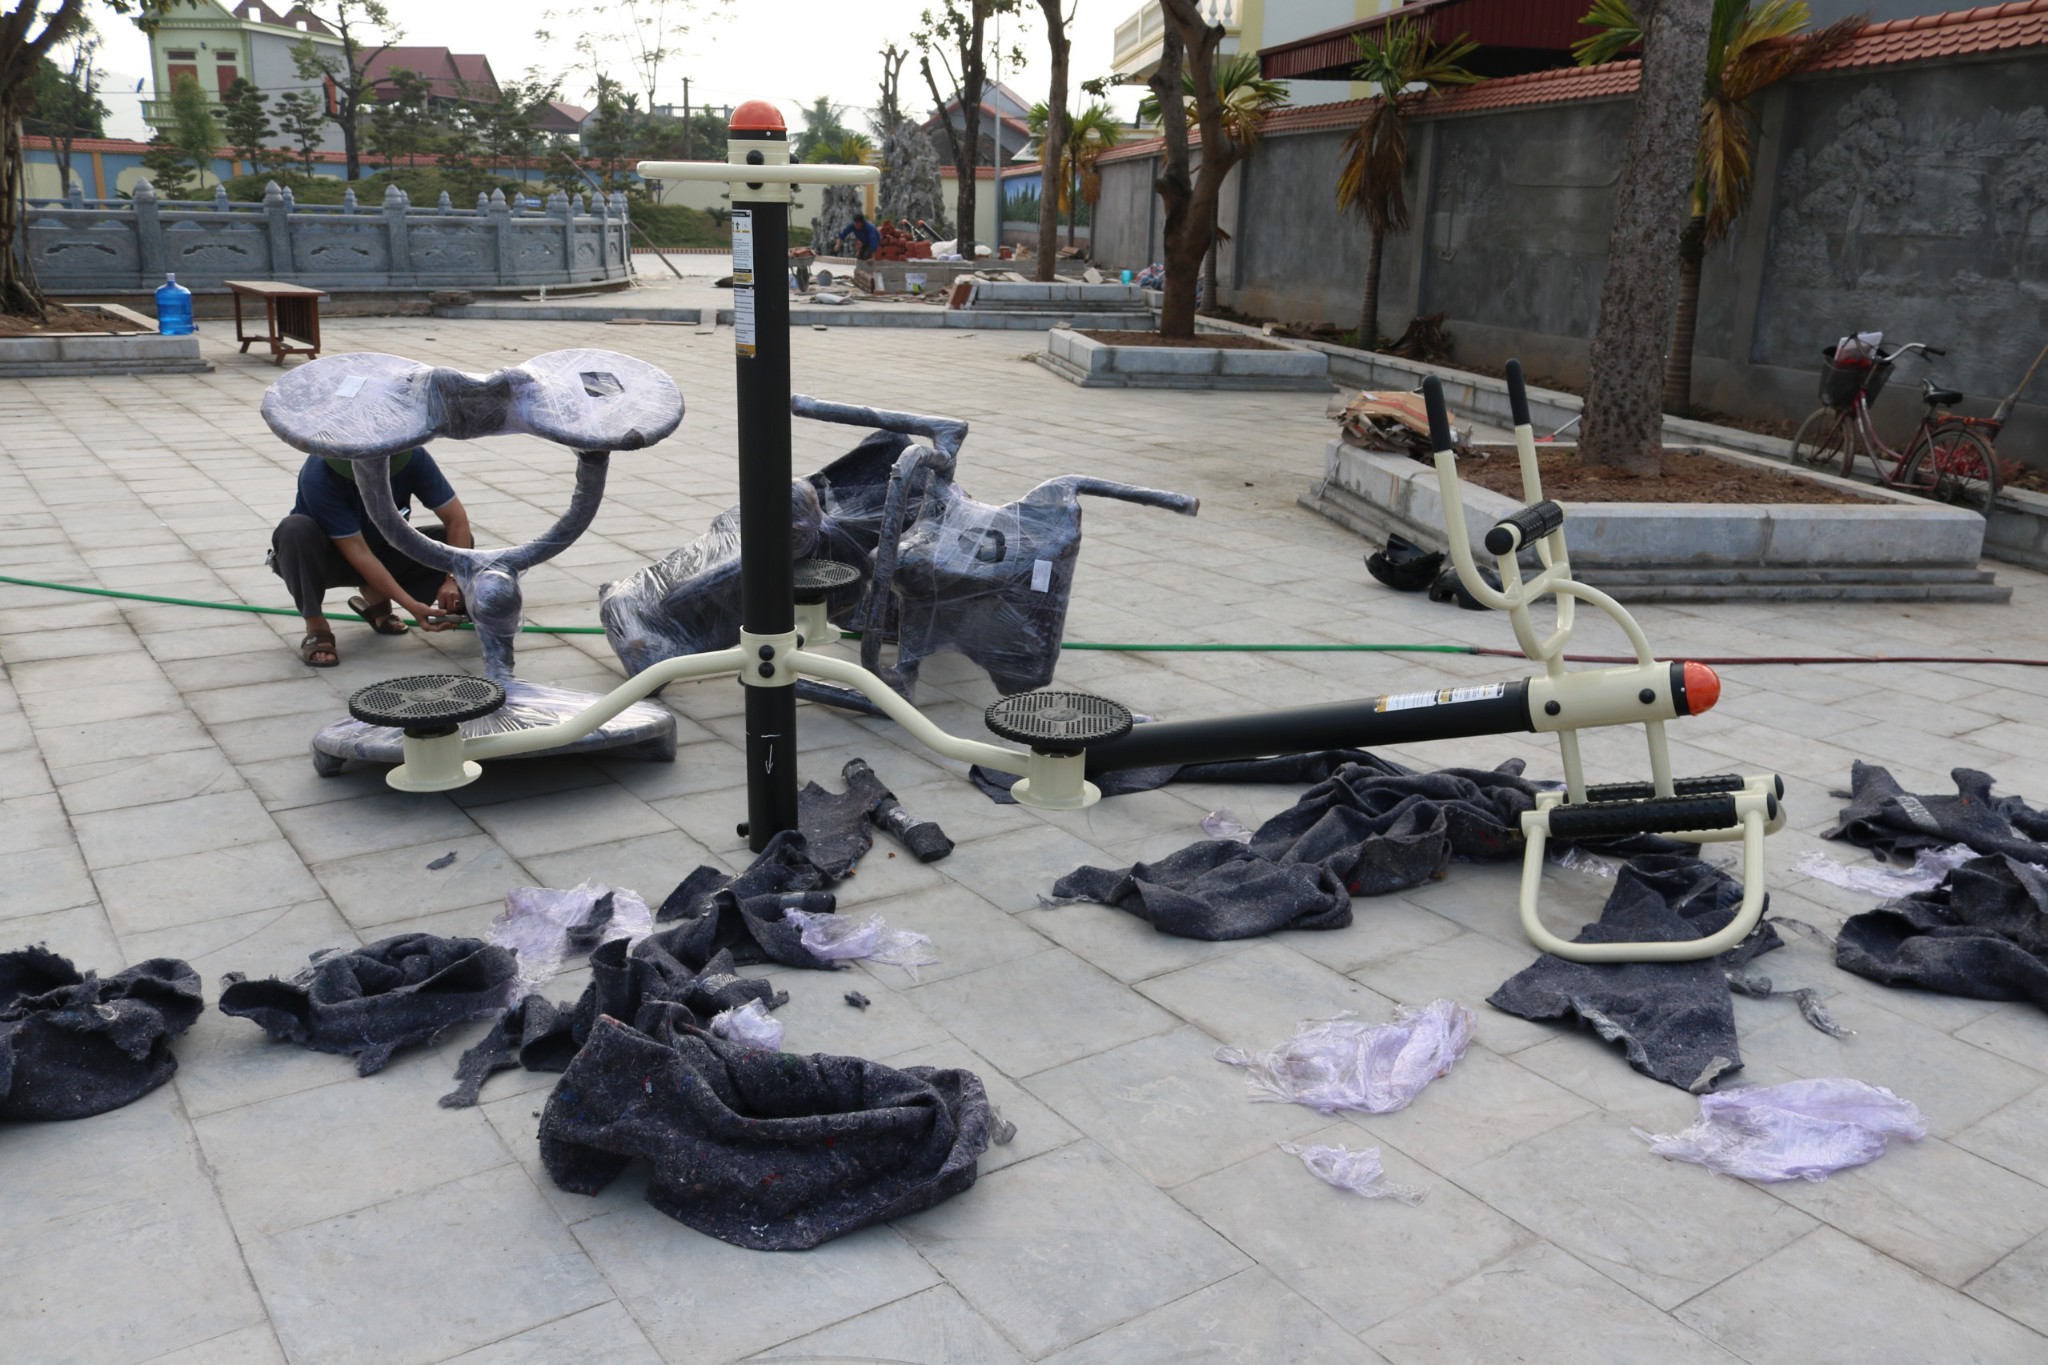 thiết bị tập thể dục ngoài trời tại Kinh Môn Hải Dương, thiet bi tap the duc ngoai troi tai Kinh Mon Hai Duong